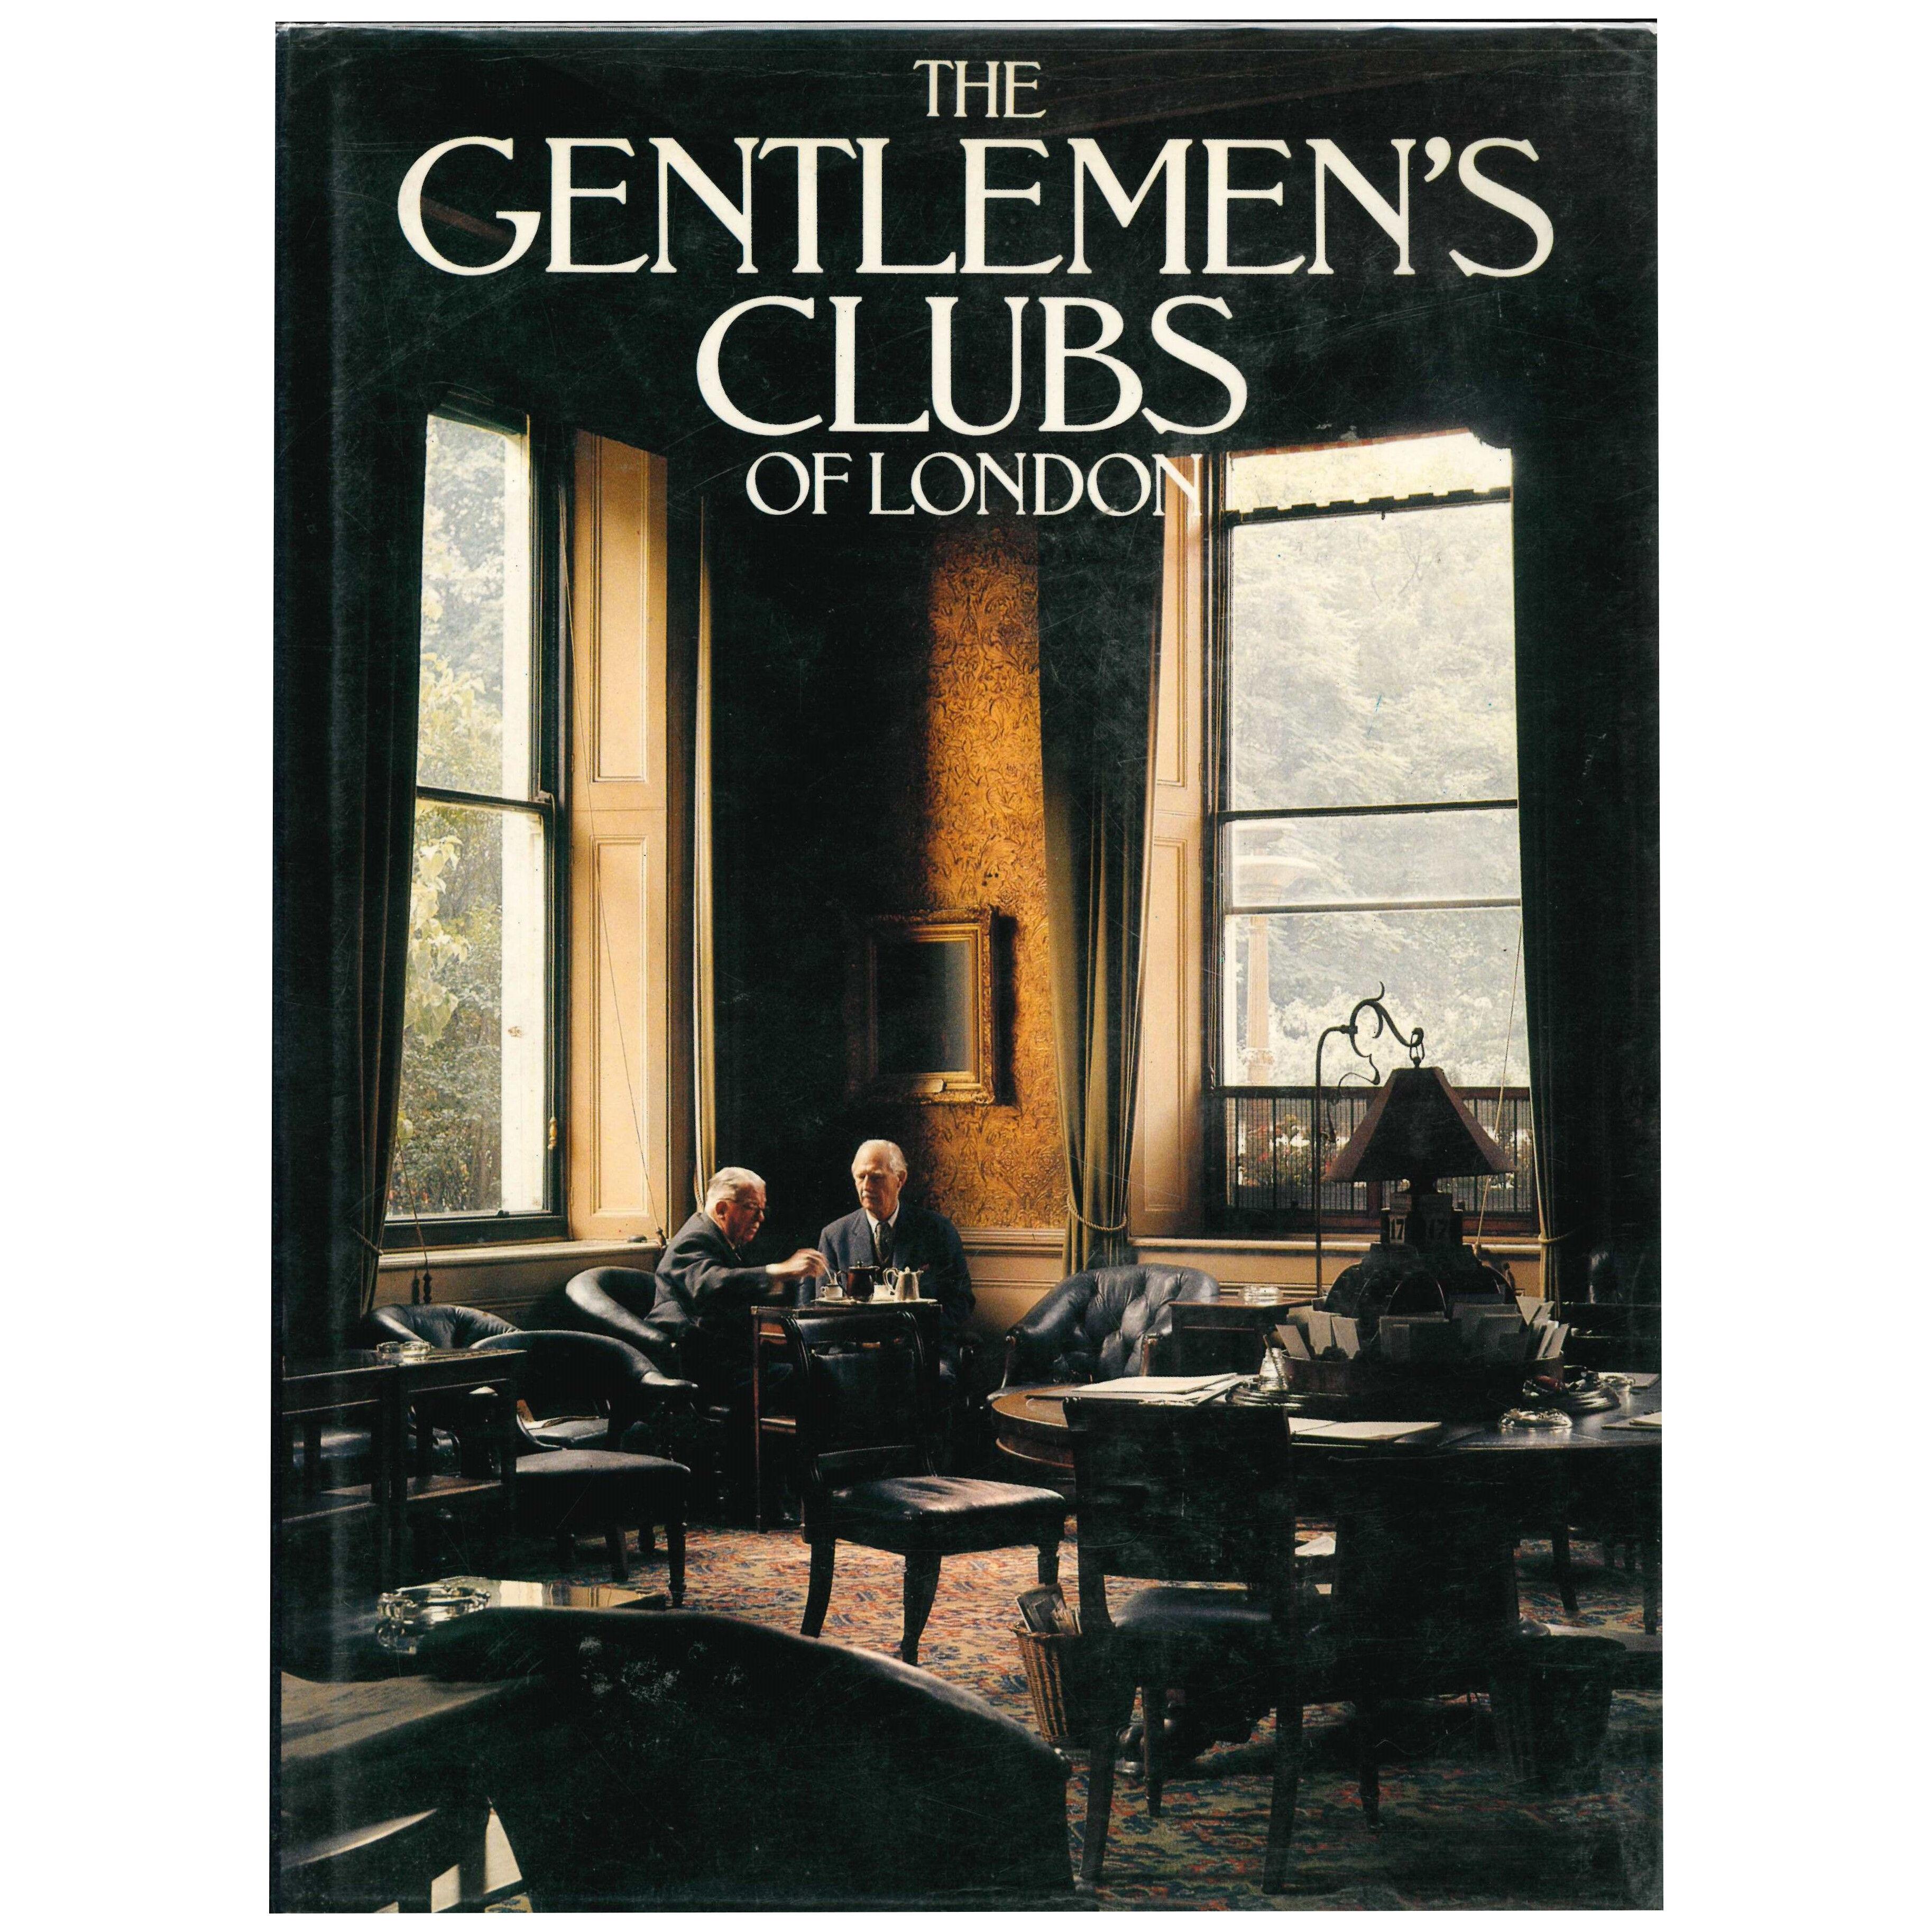 THE GENTLEMEN'S CLUBS OF LONDON. Book